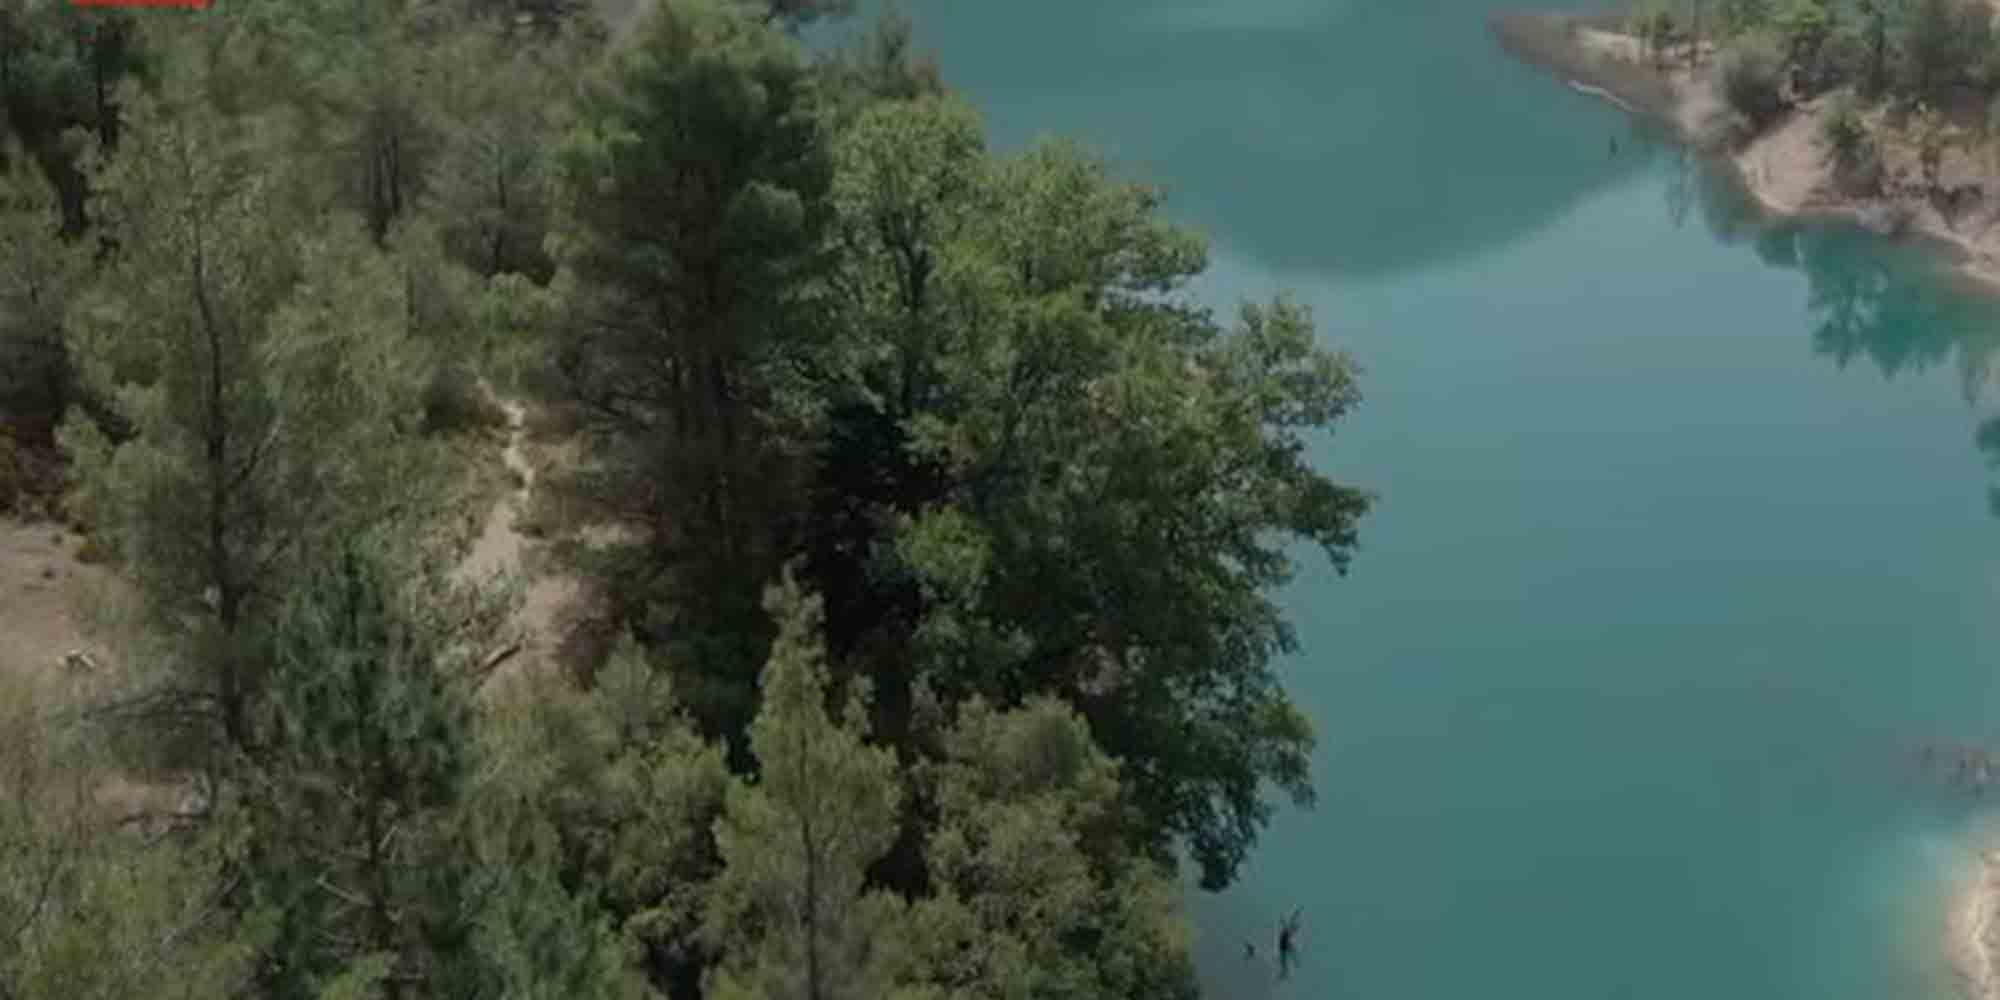 Λίμνη Τσιβλού ή αλλιώς «λίμνη της διολίσθησης» - Το πανέμορφο τοπίο 25 χιλιόμετρα από την Ακράτα (βίντεο & εικόνες)